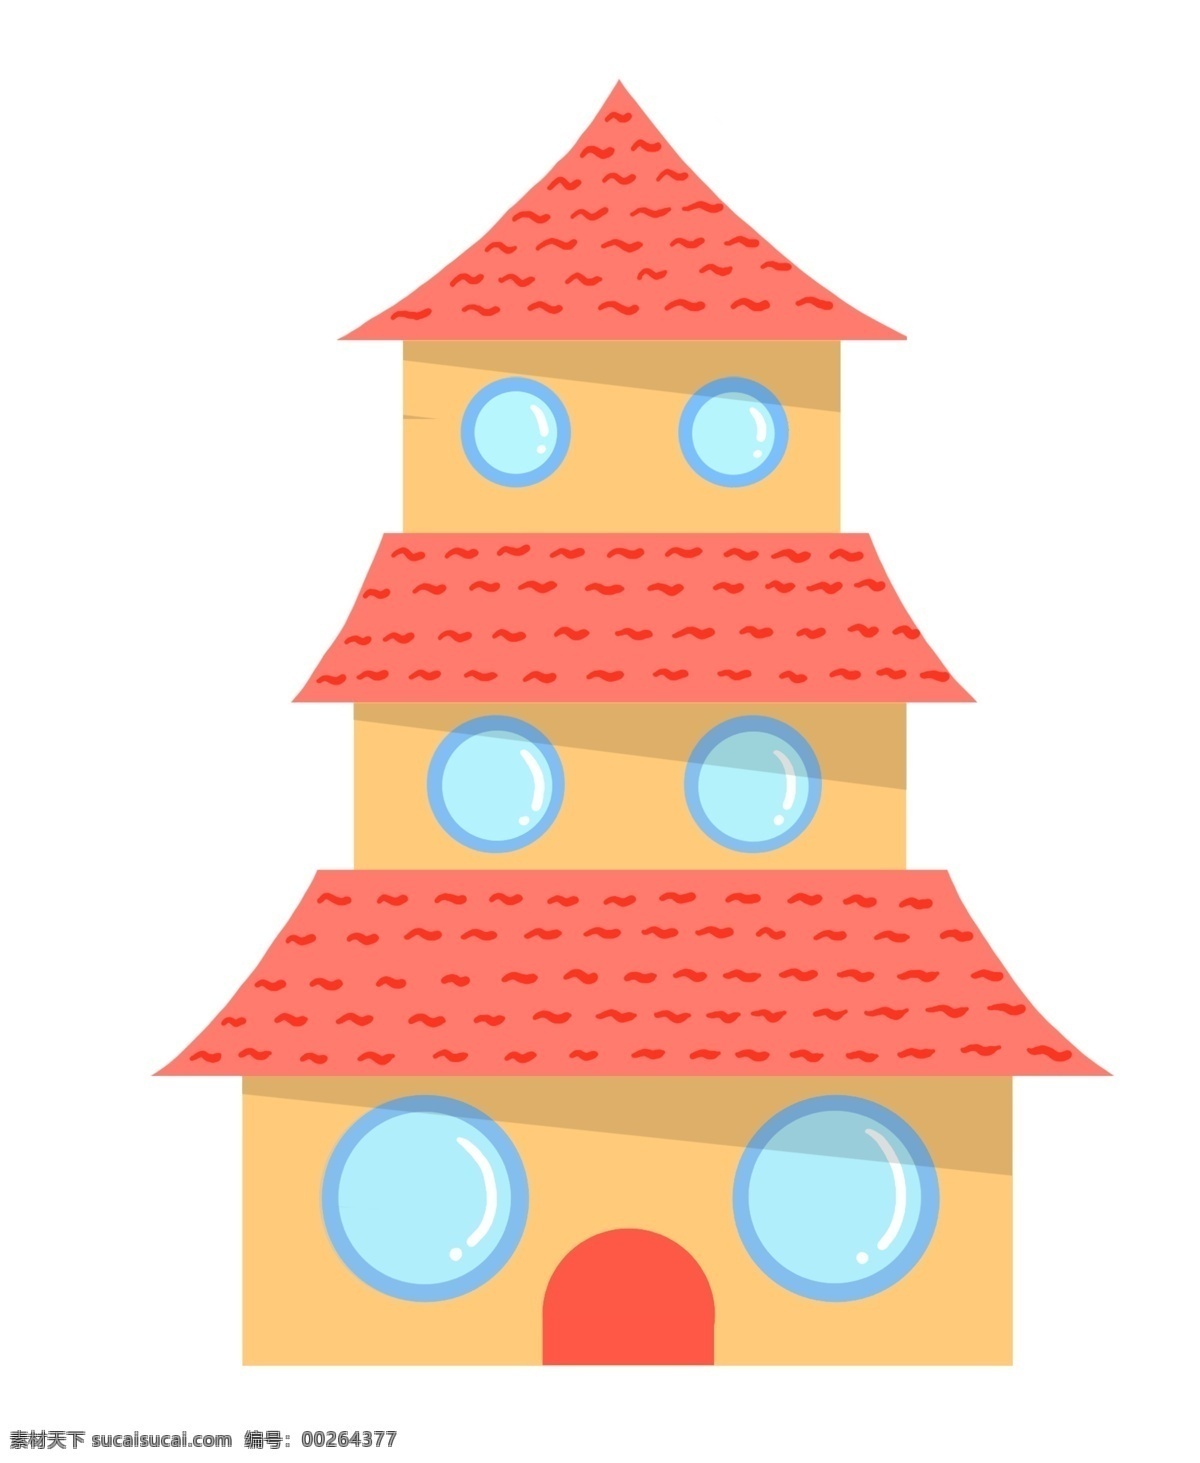 三 层 房屋 装饰 插画 三层房屋 黄色的房屋 漂亮的房屋 创意房屋 立体房屋 精美房屋 卡通房屋